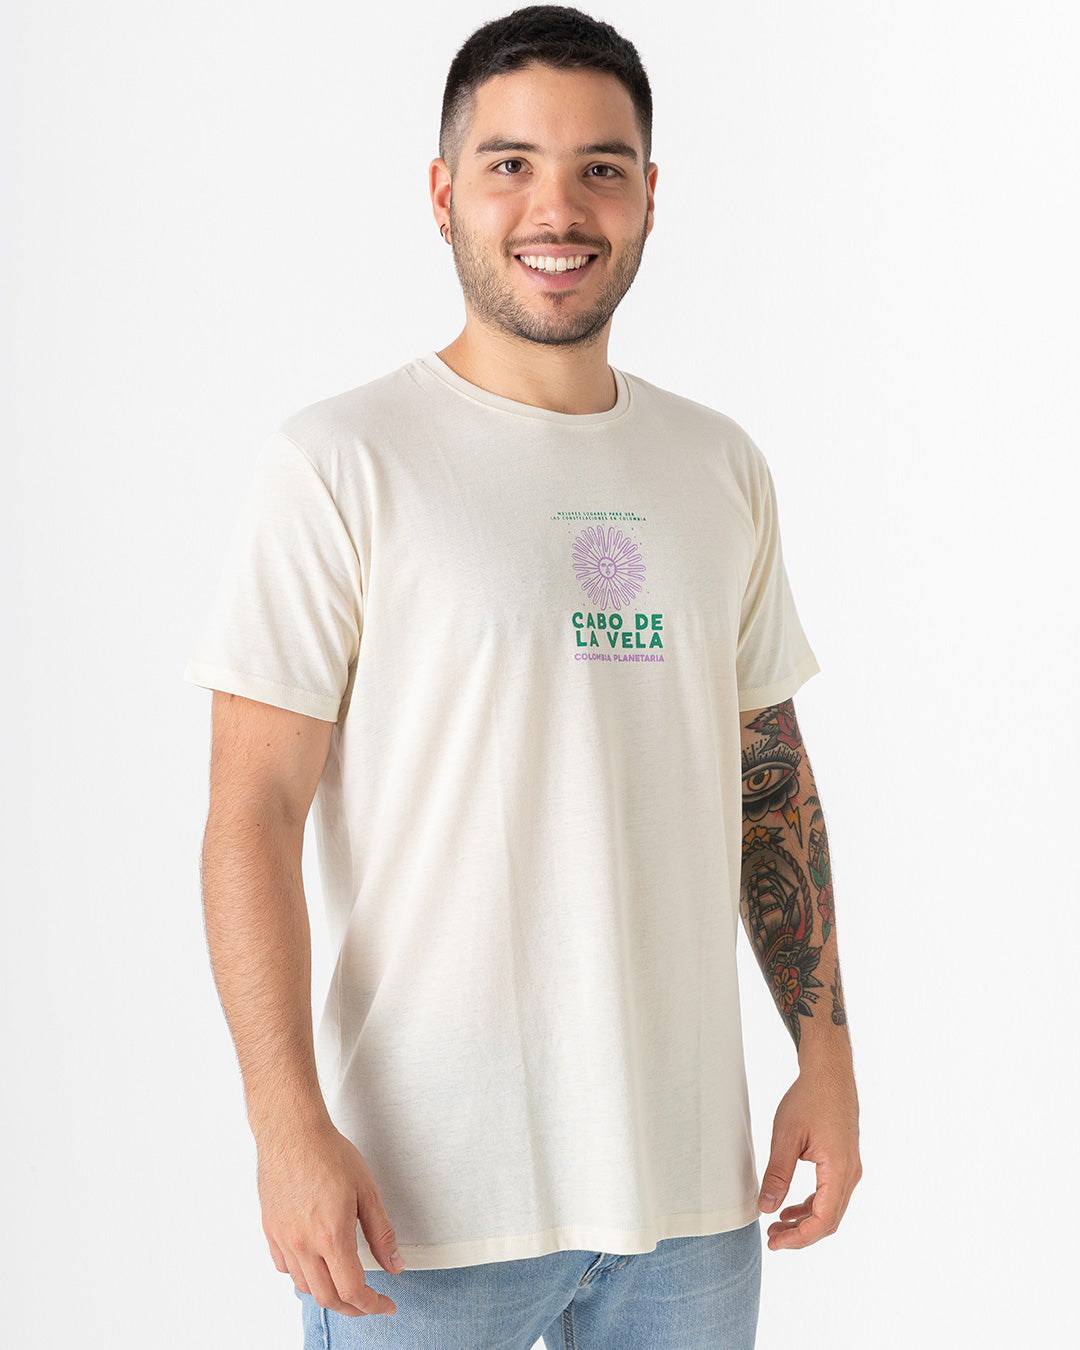 Cabo de la Vela (Camiseta unisex Salvando Mares)